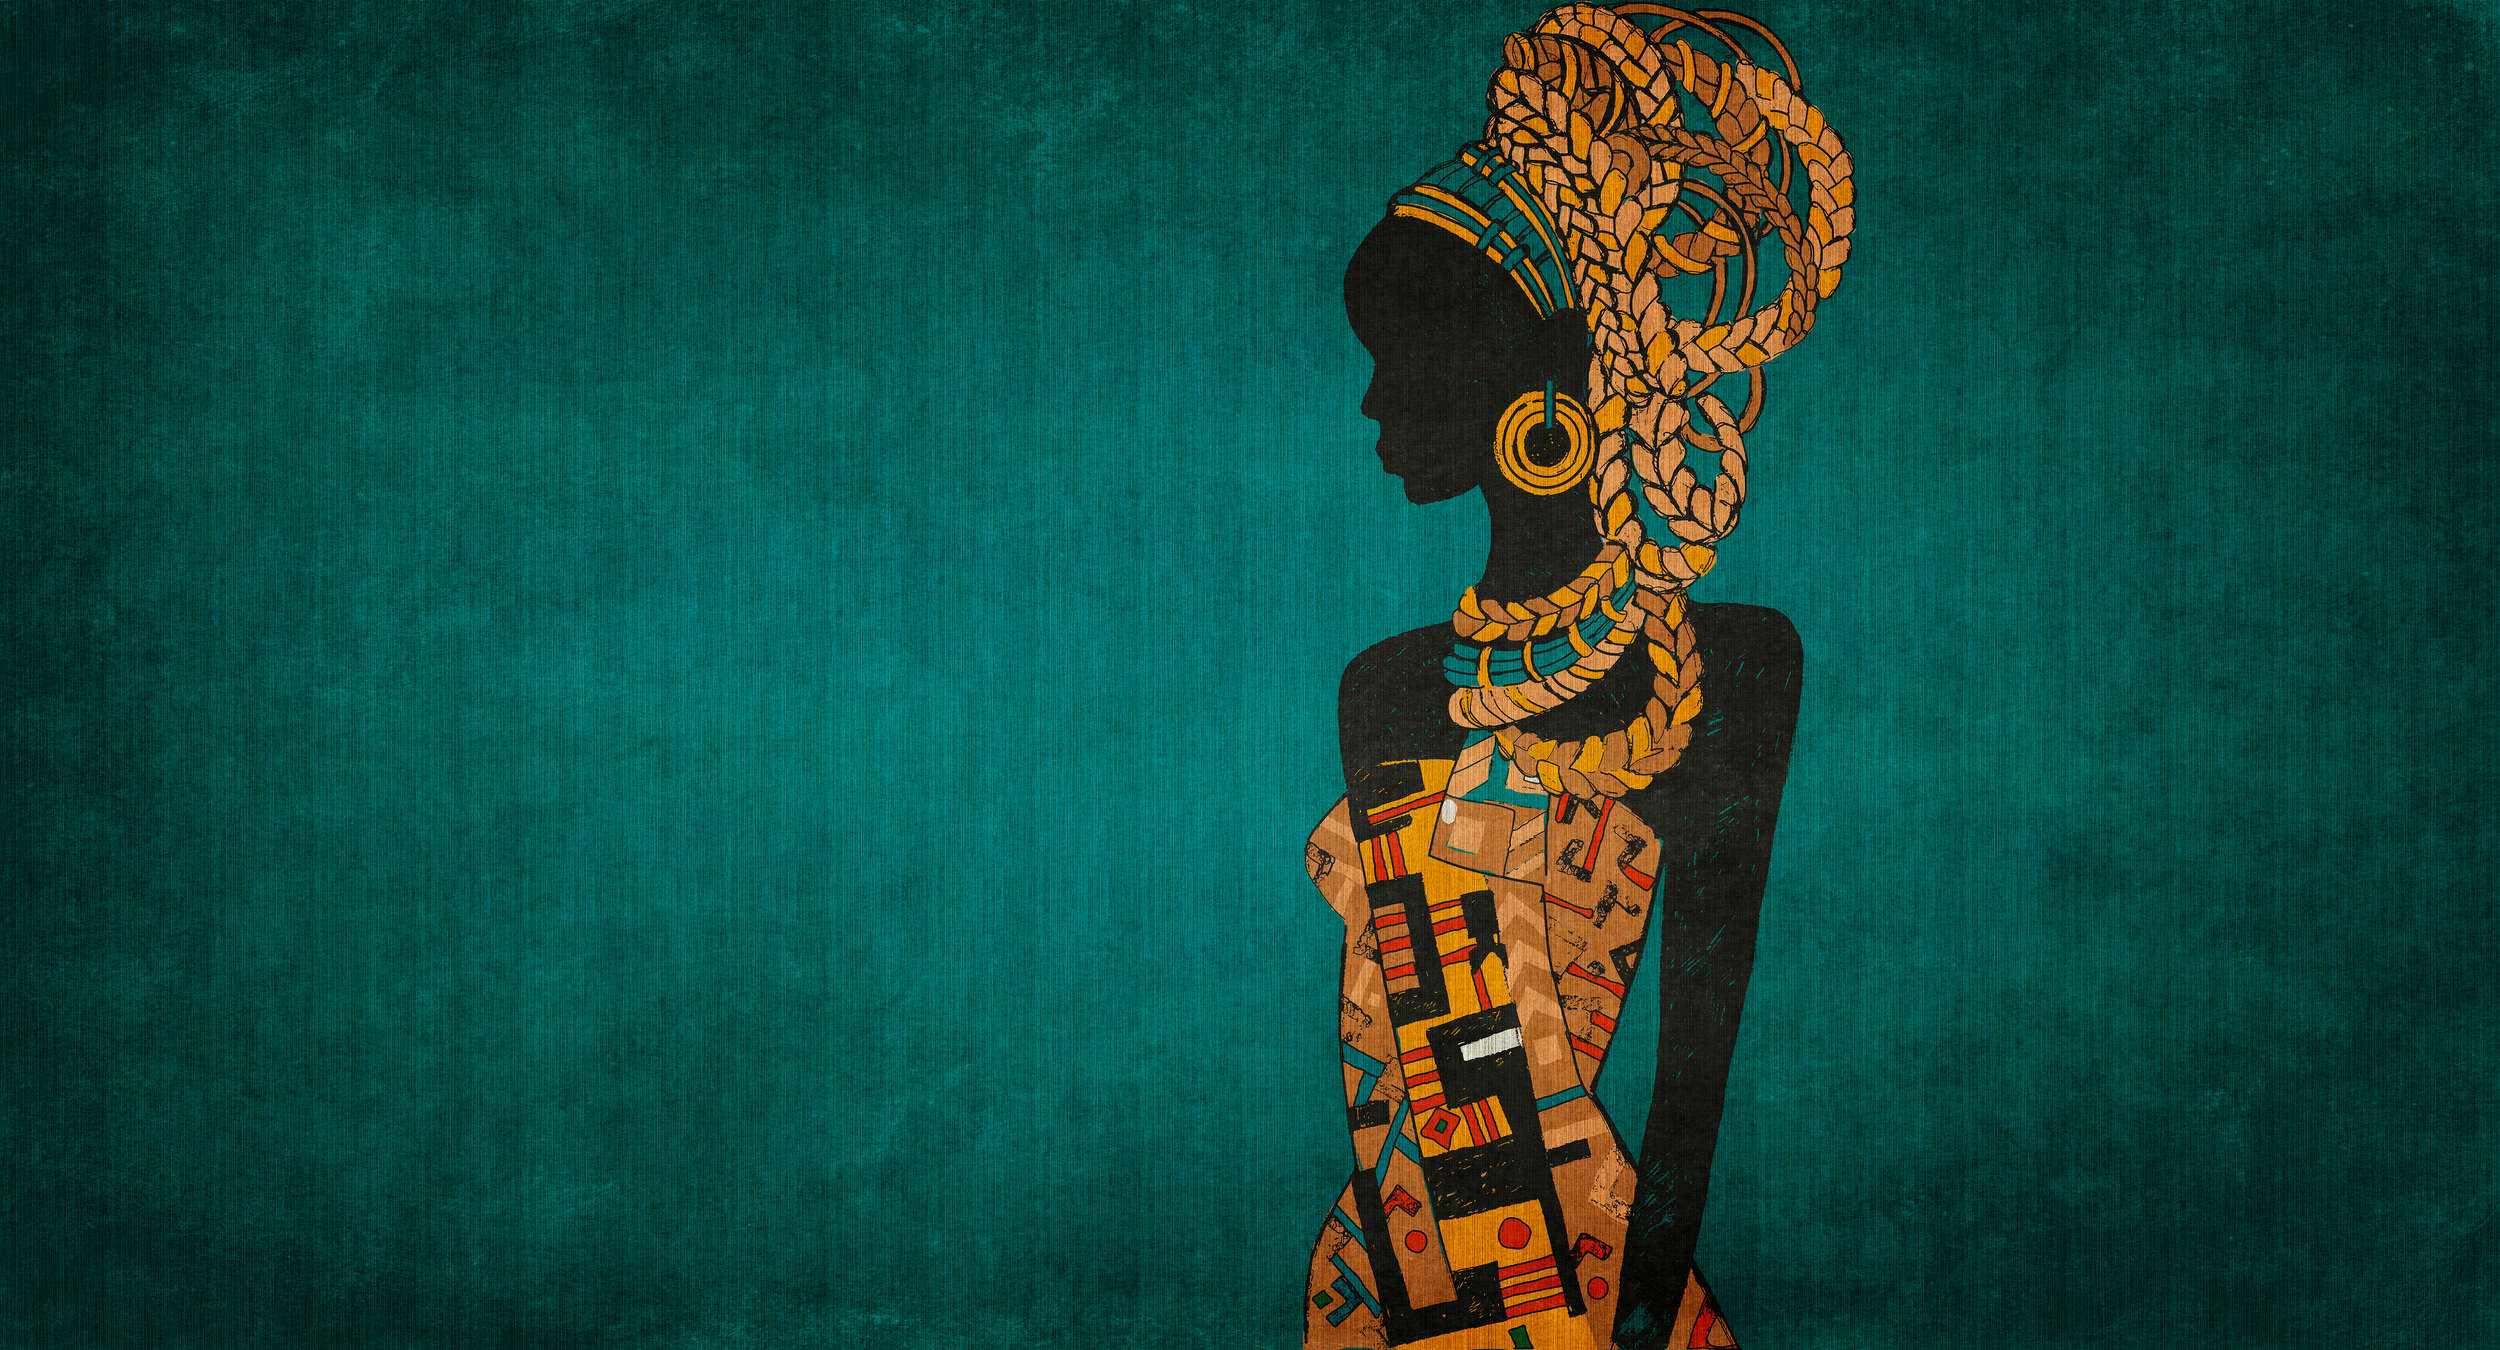             Nairobi 2 - Papier peint africain pétrole avec silhouette de femme
        